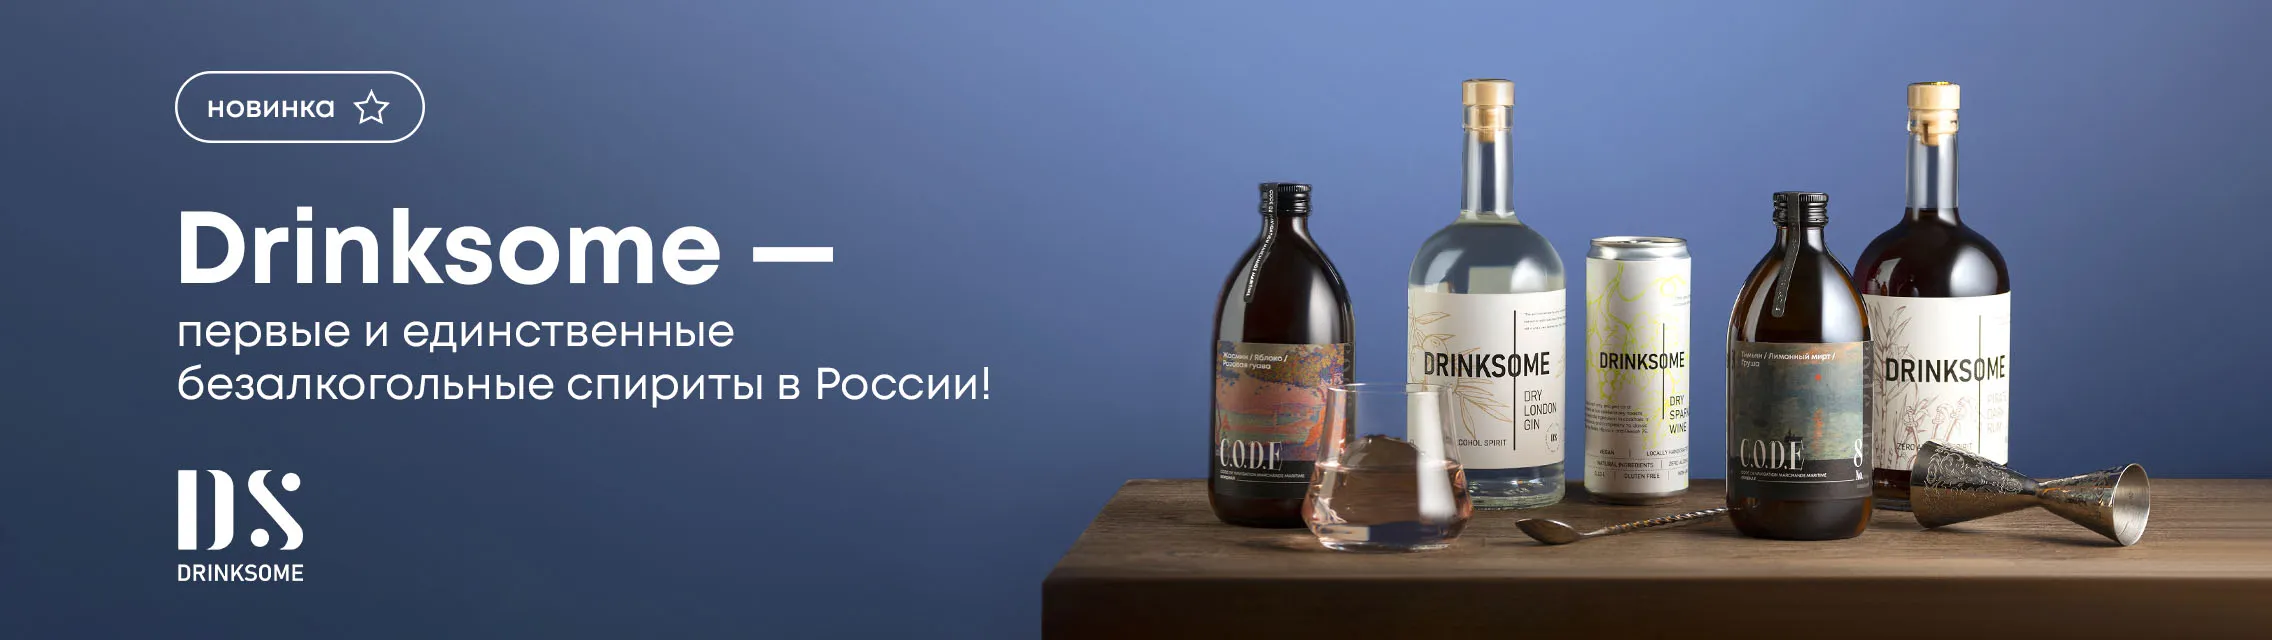 Drinksome - первые и единственные безалкогольные спириты в России!